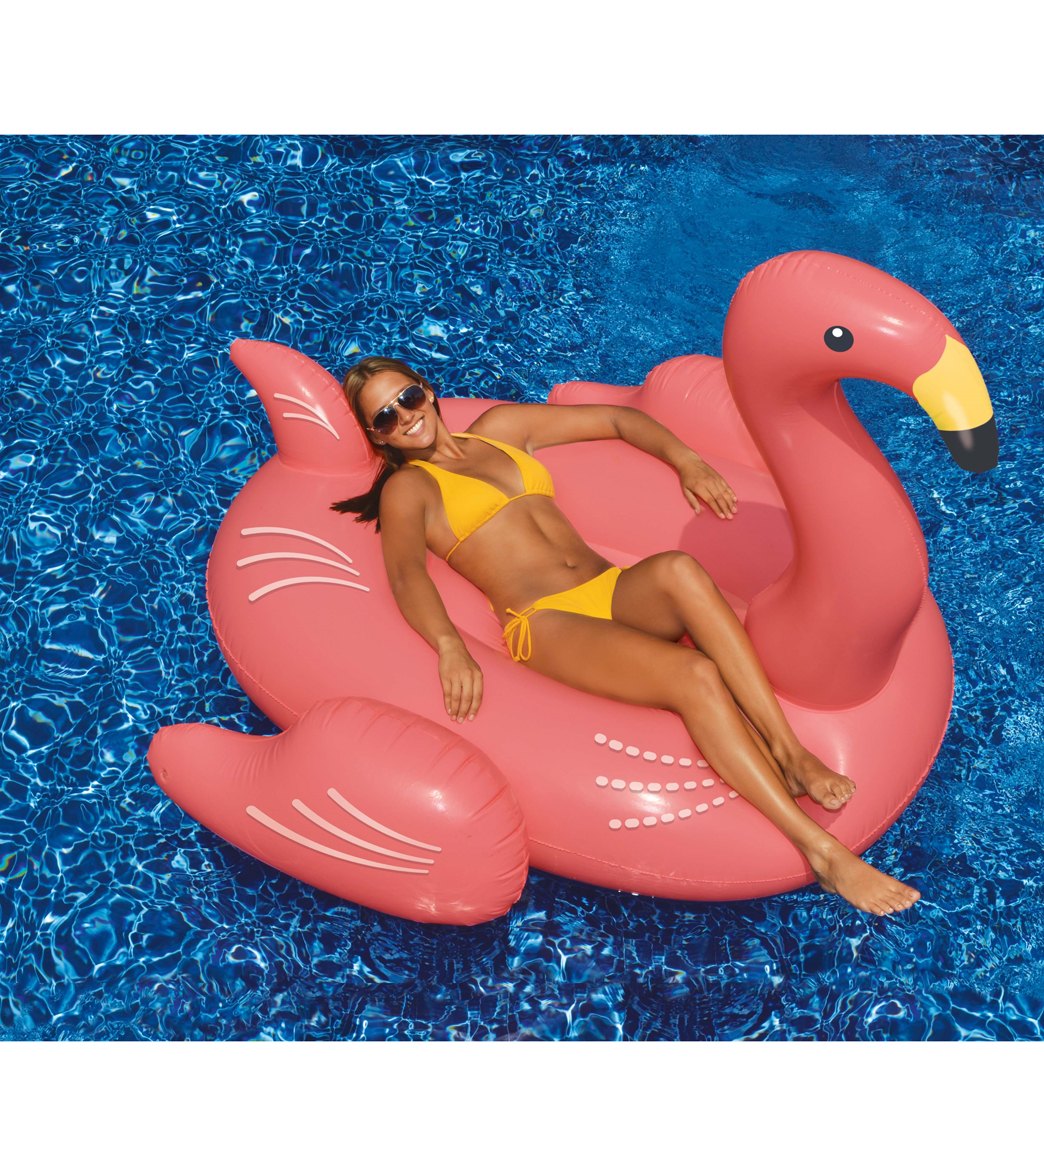 Giant Inflatable Ride-On Pool Flamingo